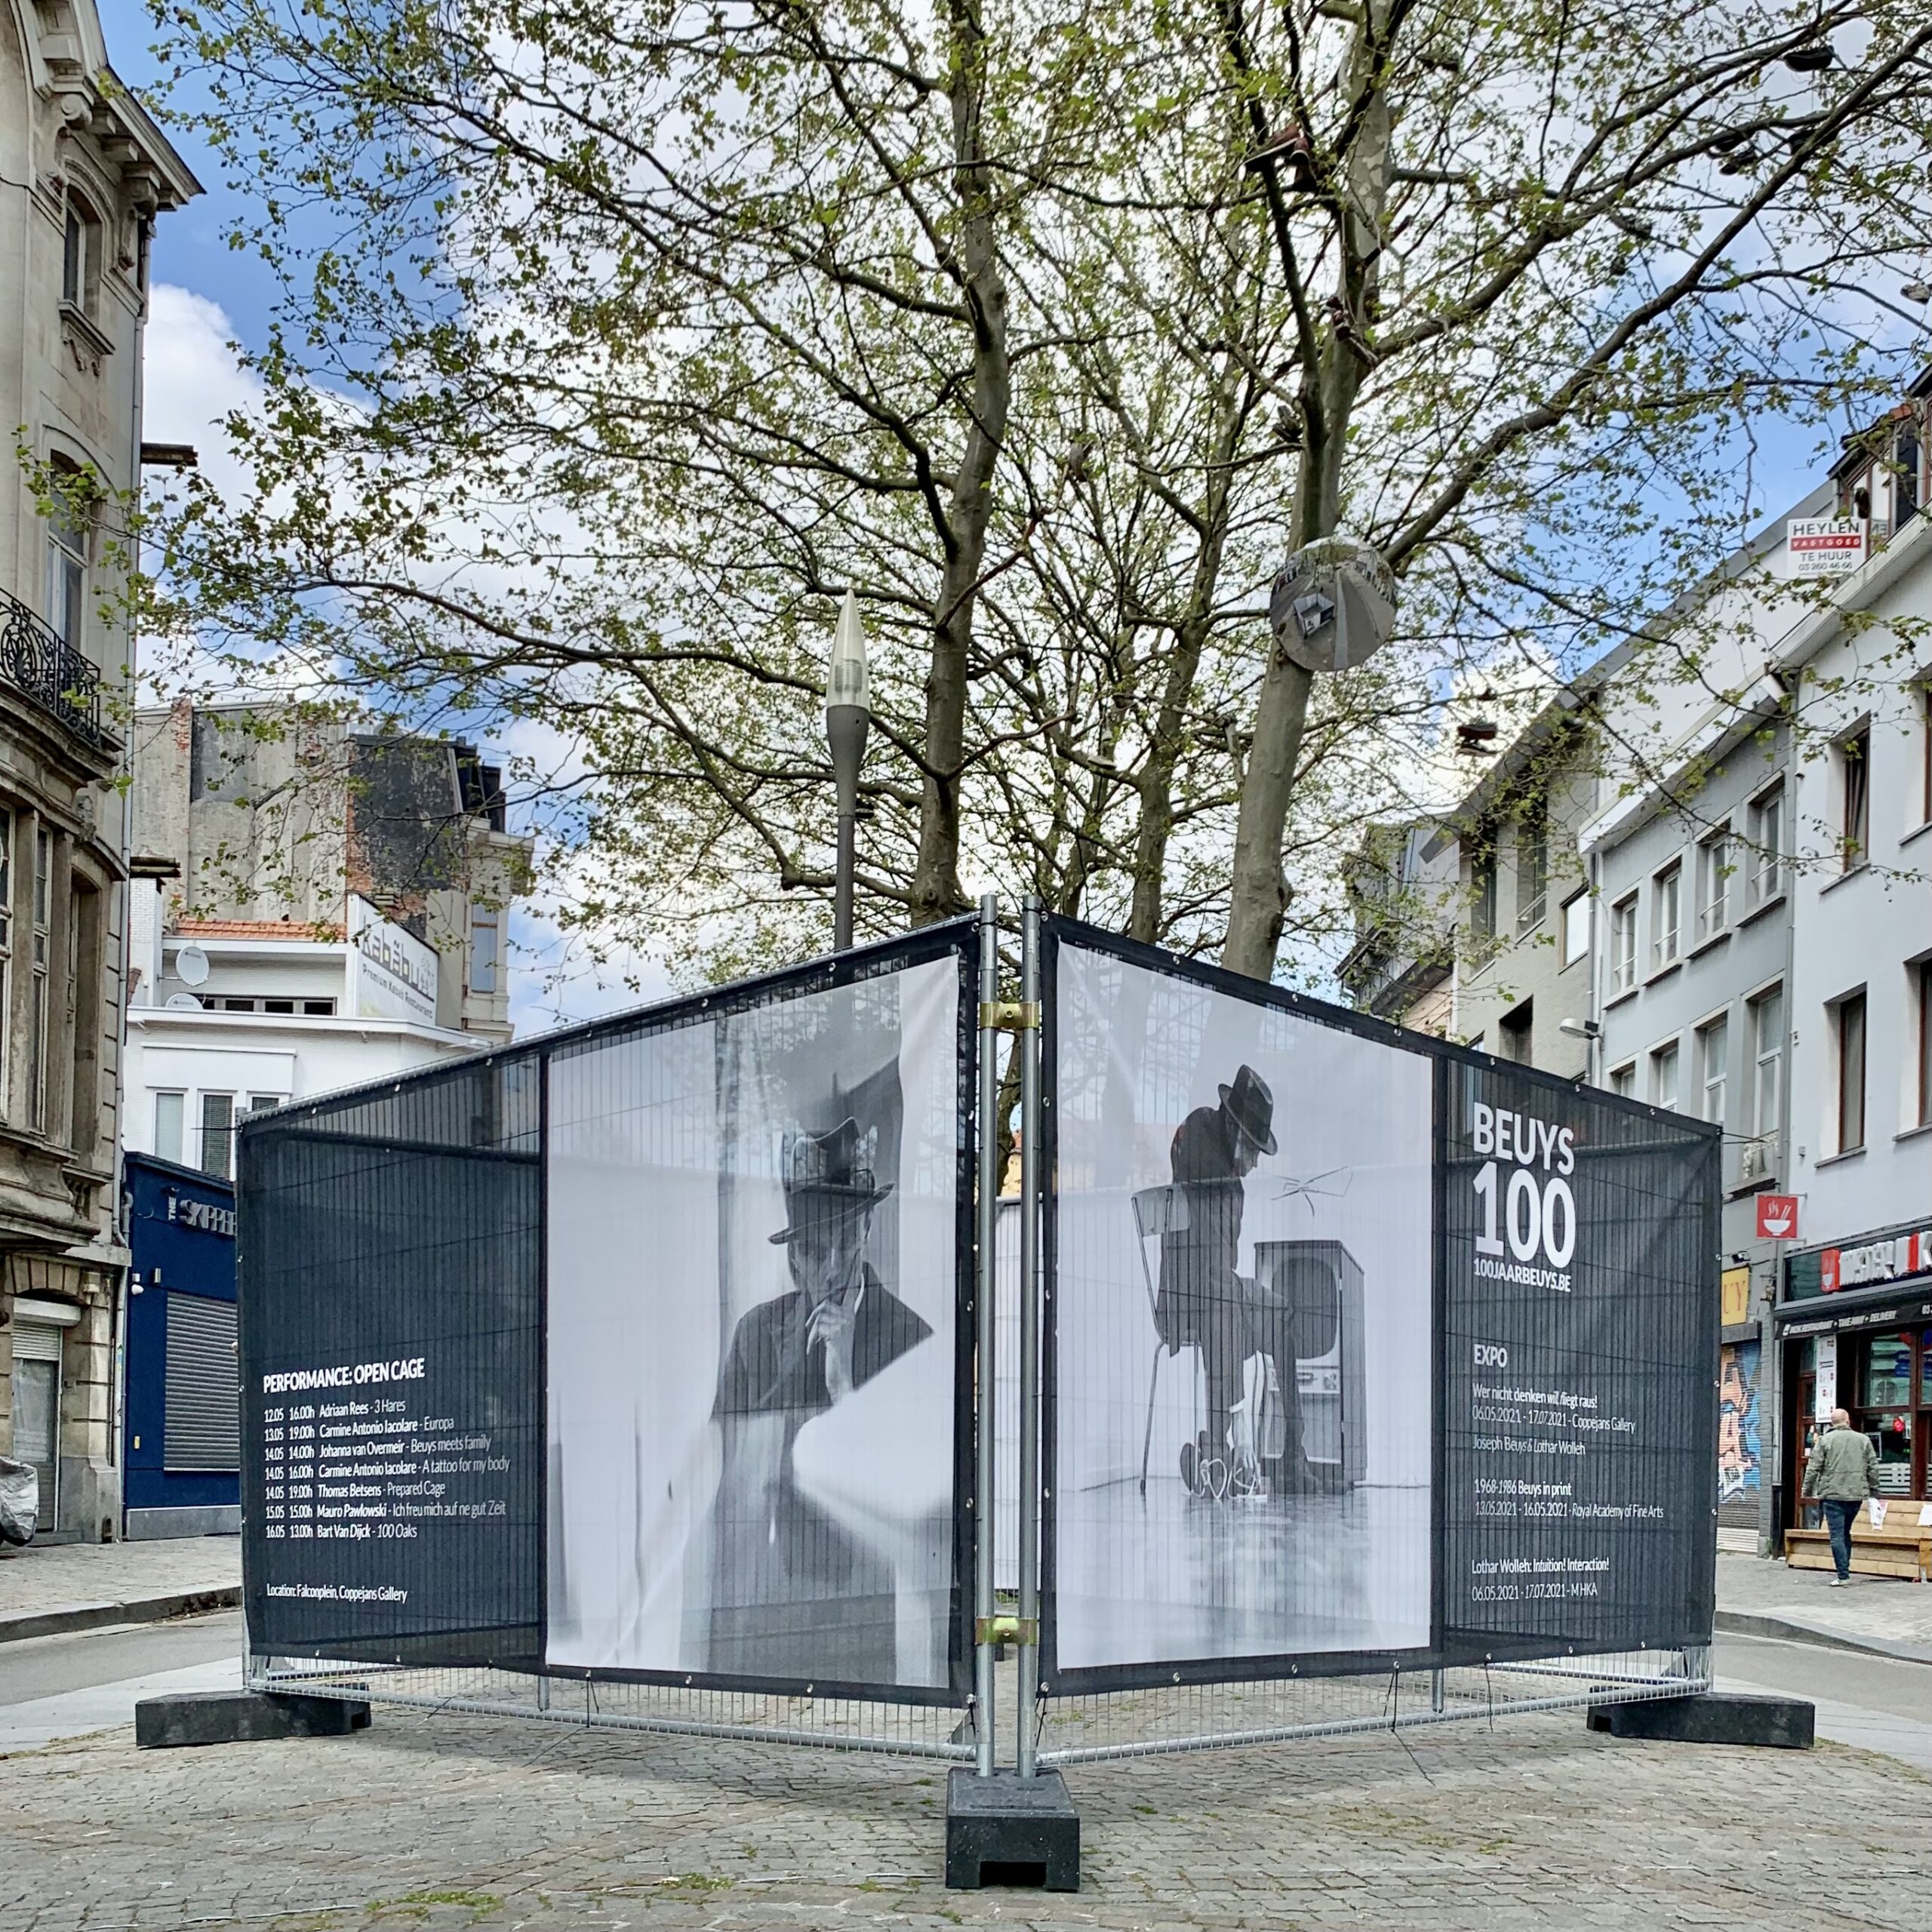 OpenCage op het Falconplein voor 100 jaar Beuys